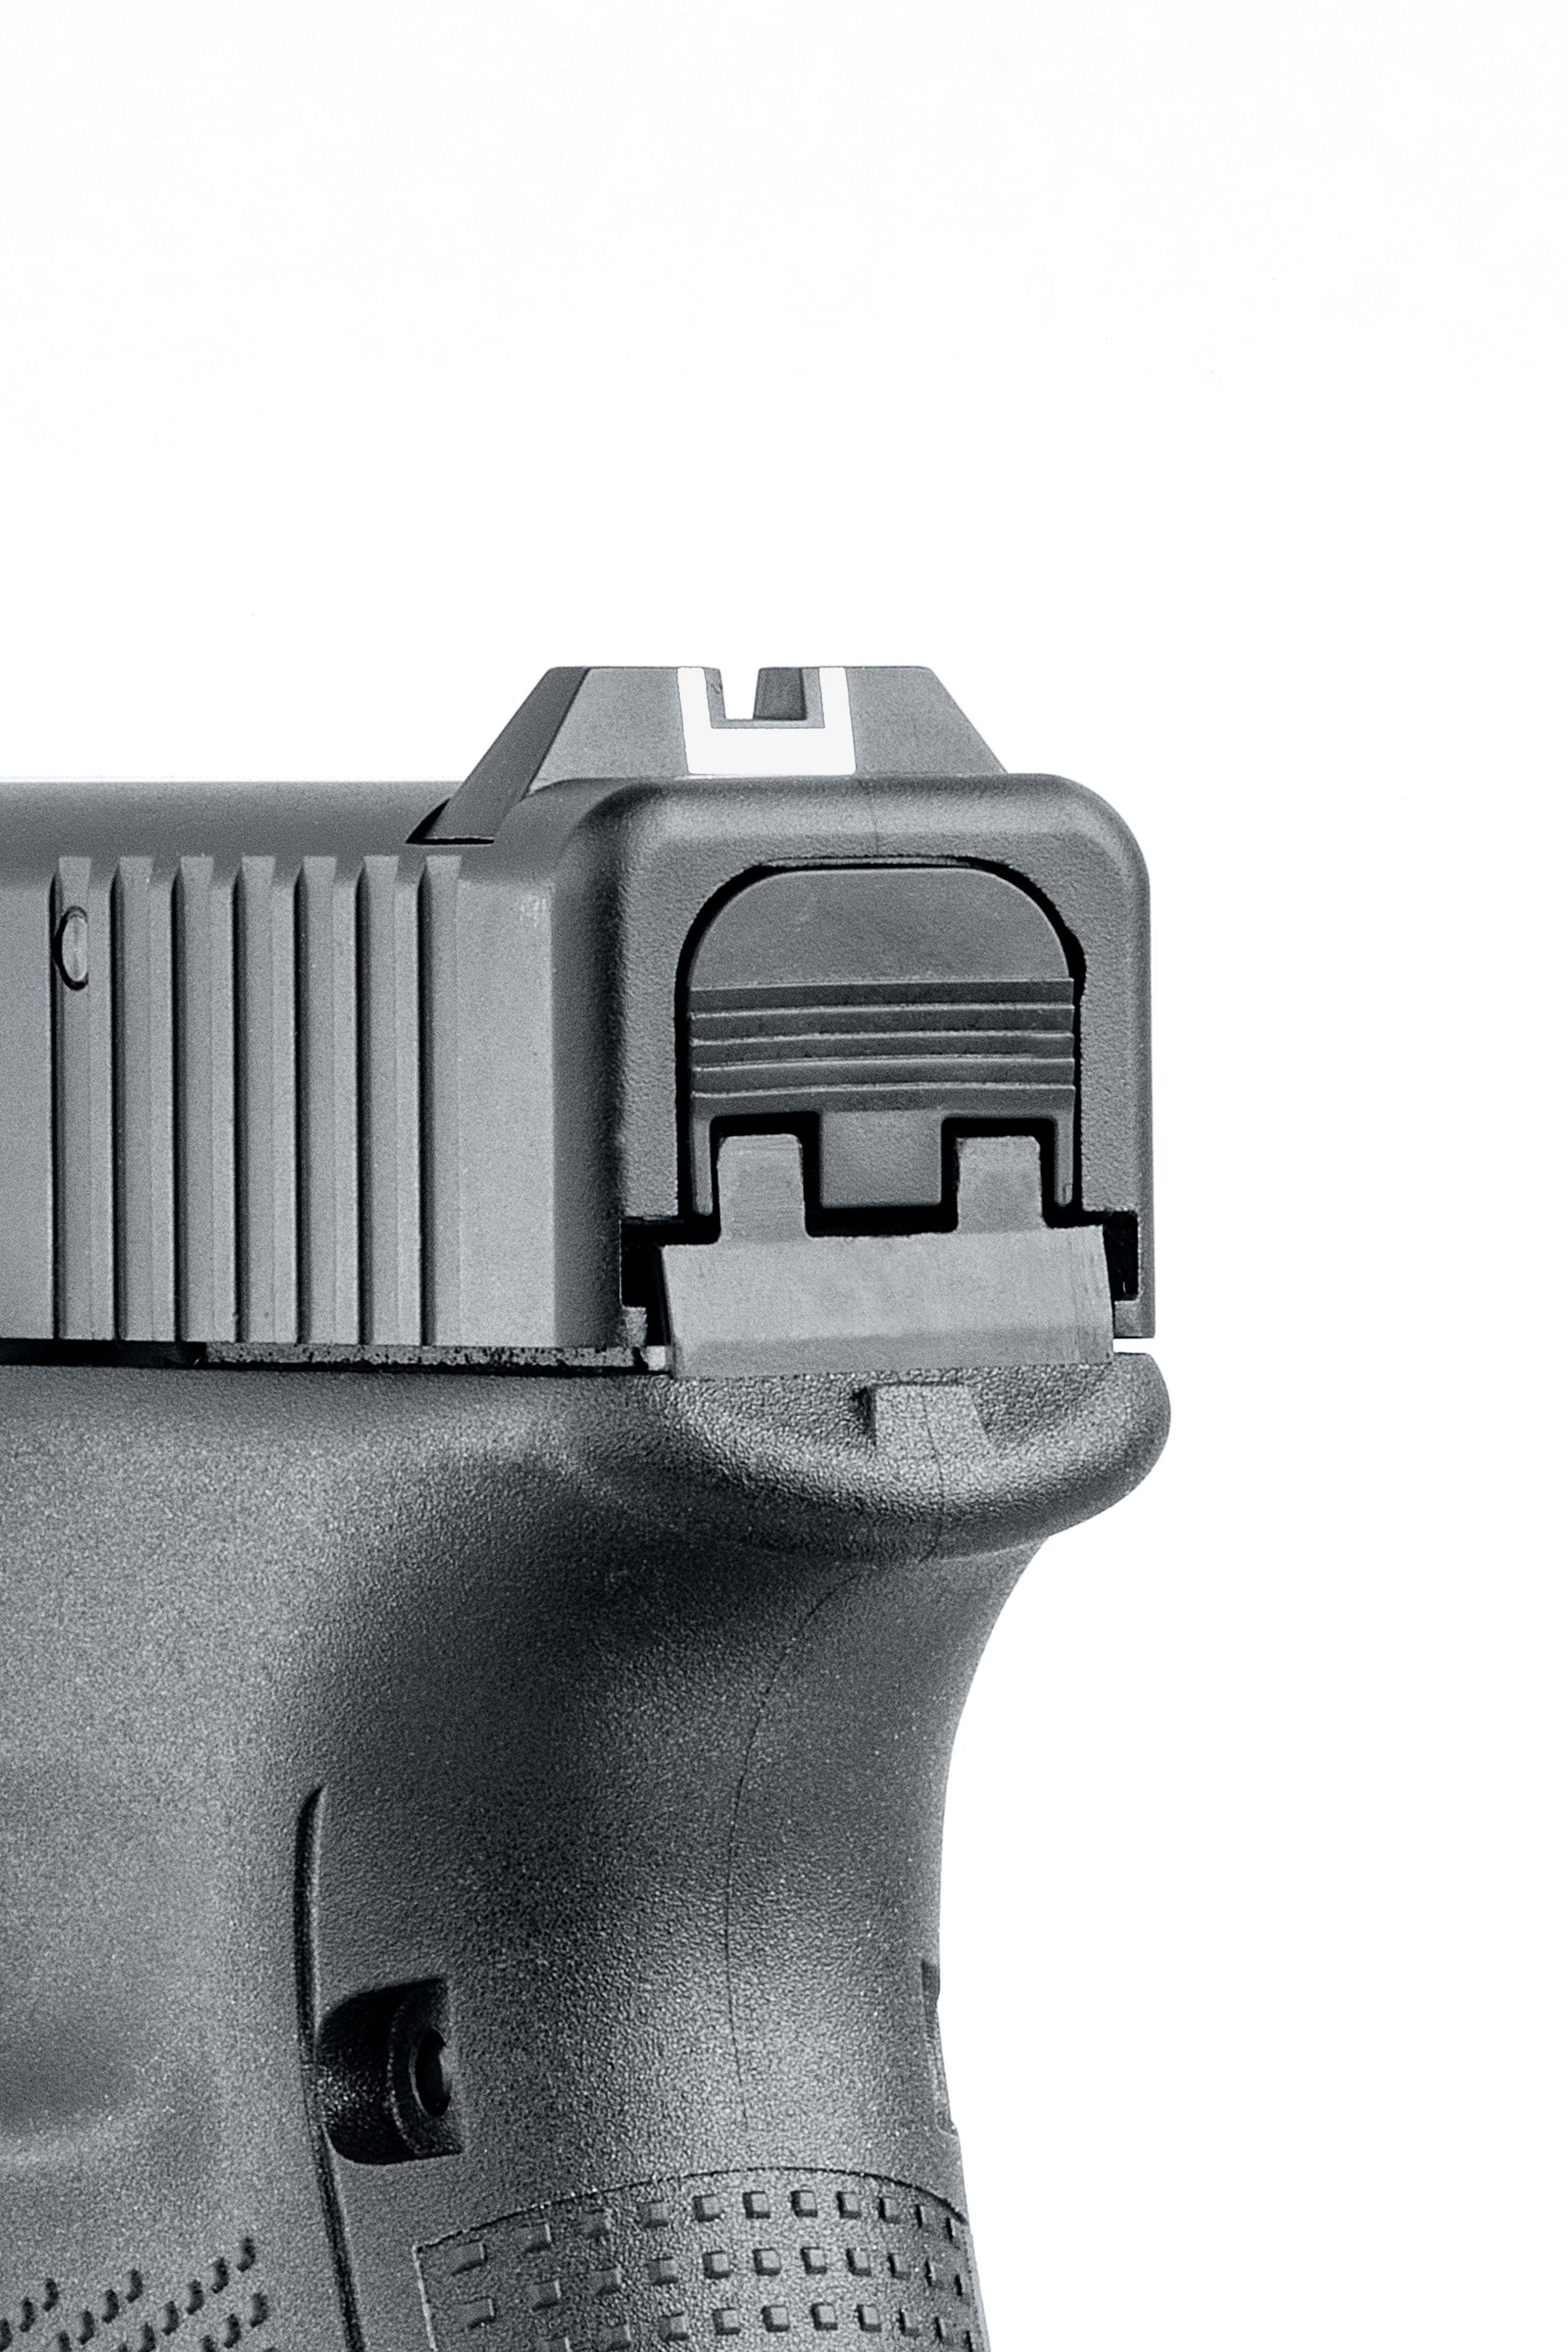 Glock 17 Gen5 9mm P.A.K. Schreckschuss First Edition